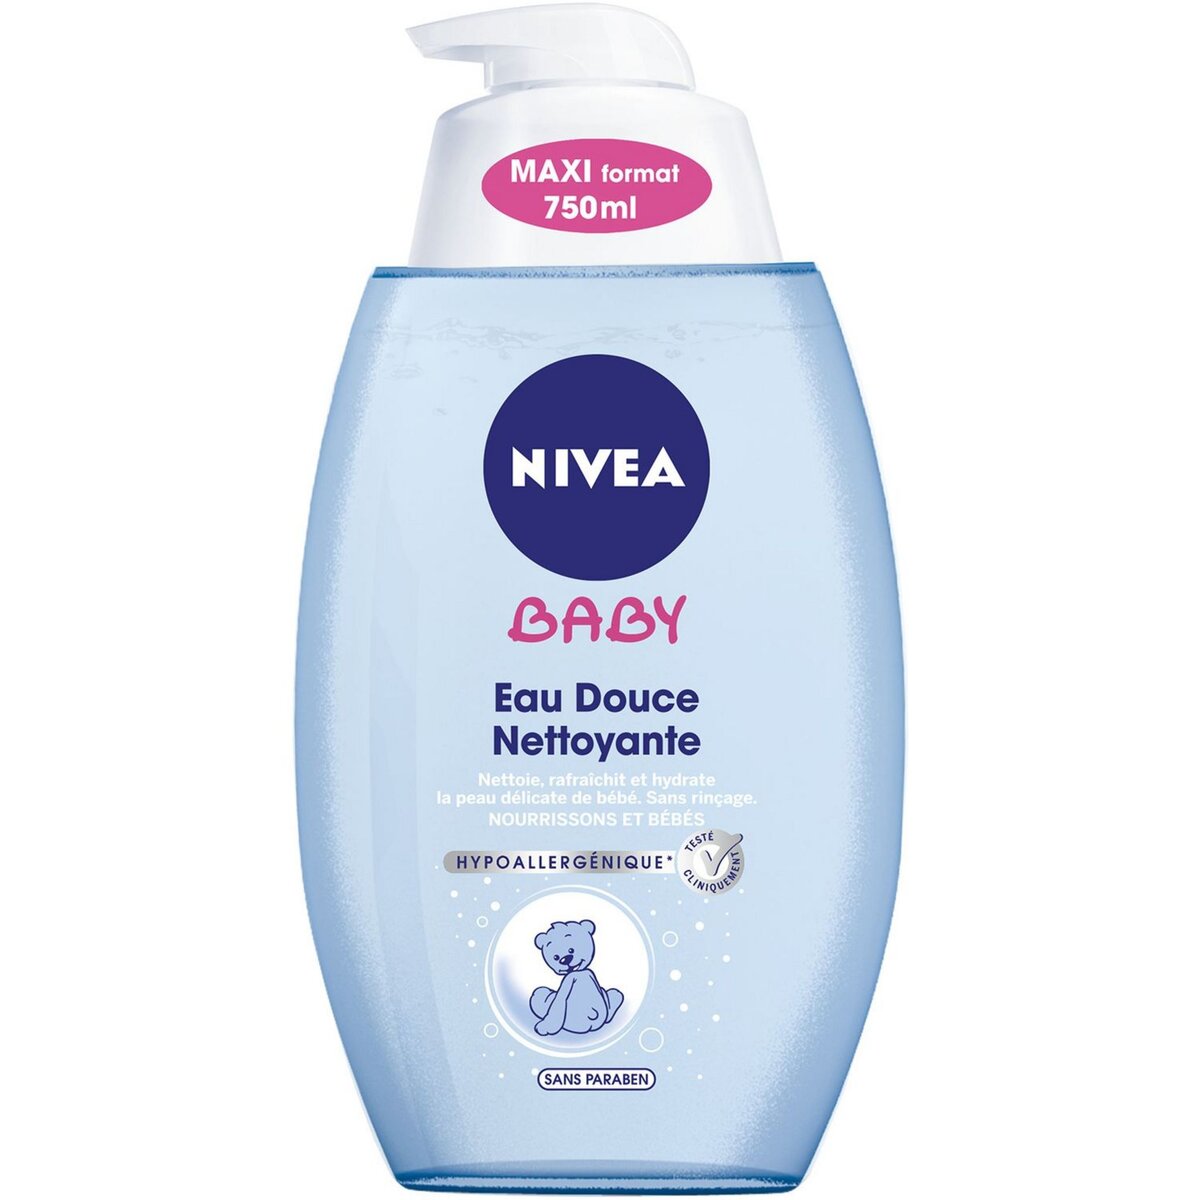 NIVEA BABY Eau nettoyante et hydratante pour nourissons et bébés 750lml